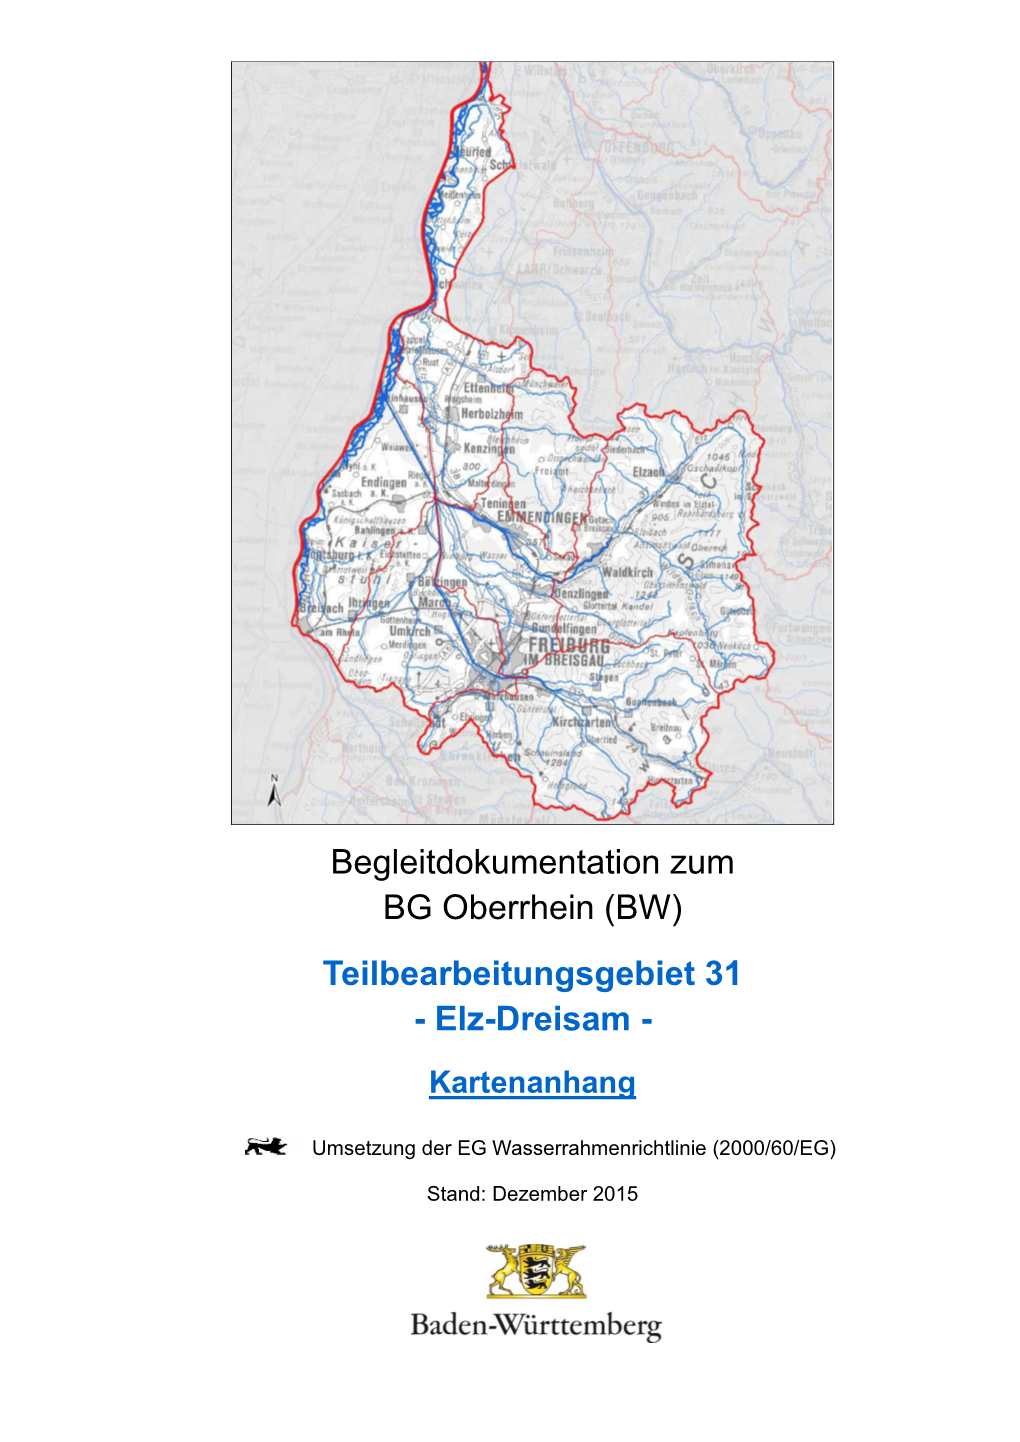 Begleitdokumentation Zum BG Oberrhein (BW) Teilbearbeitungsgebiet 31 - Elz-Dreisam - Kartenanhang